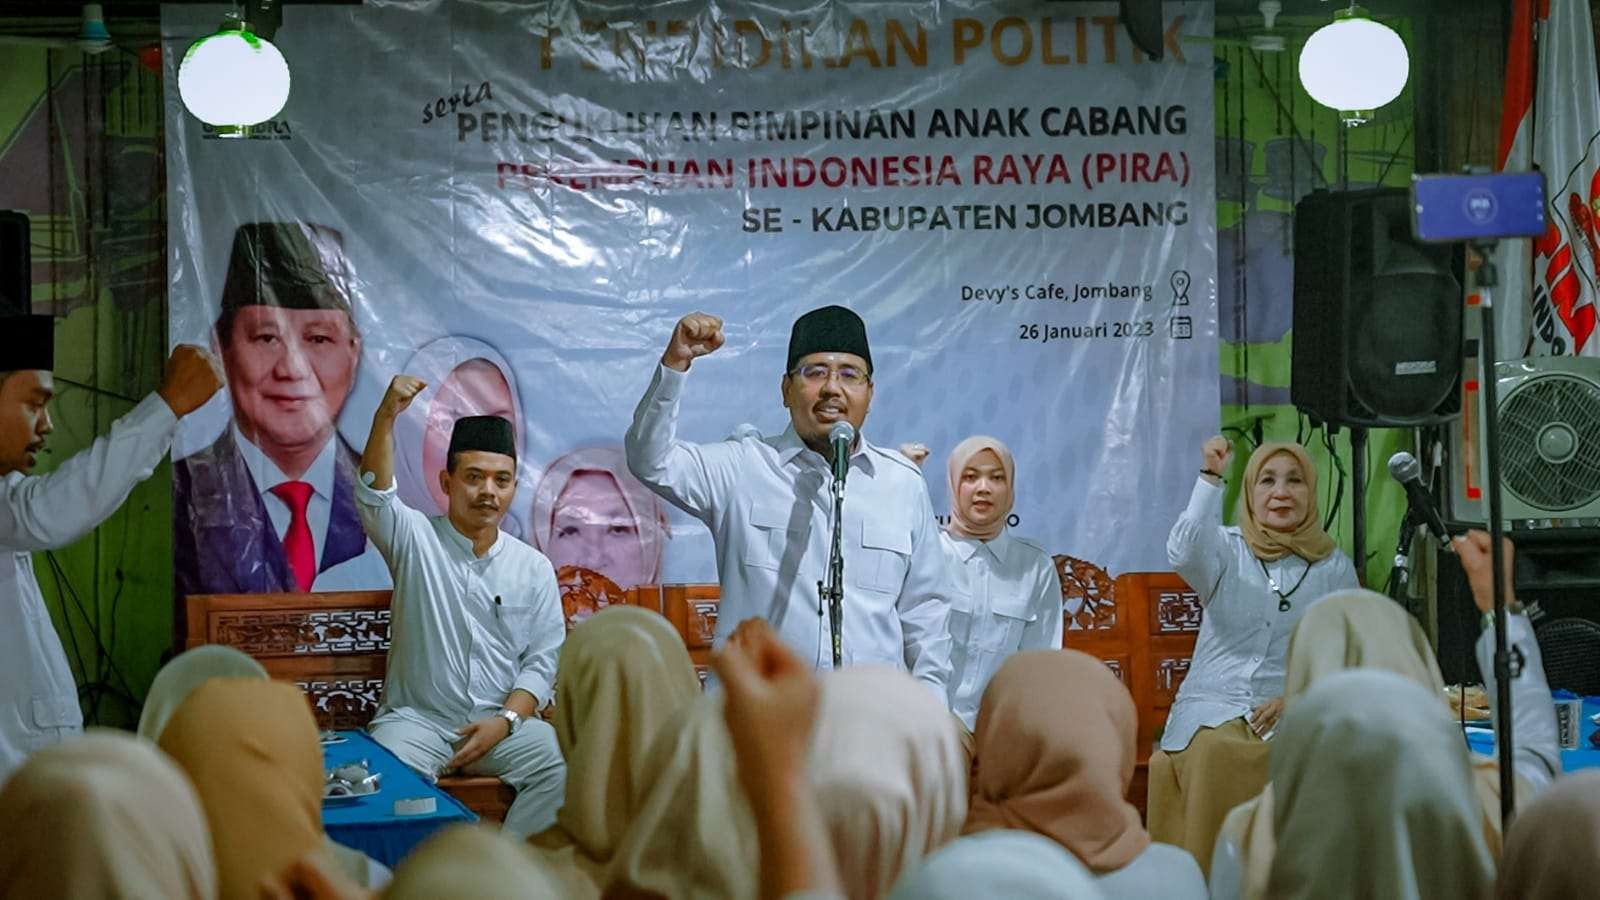 Ketua Gerindra Jatim, Anwar Sadad memberikan materi pendidikan politik di hadapan kader perempuan yang tergabung dalam Perempuan Indonesia Raya (PIRA) di Jombang, Jawa Timur. (Foto: Dokumentasi Gerindra Jatim)